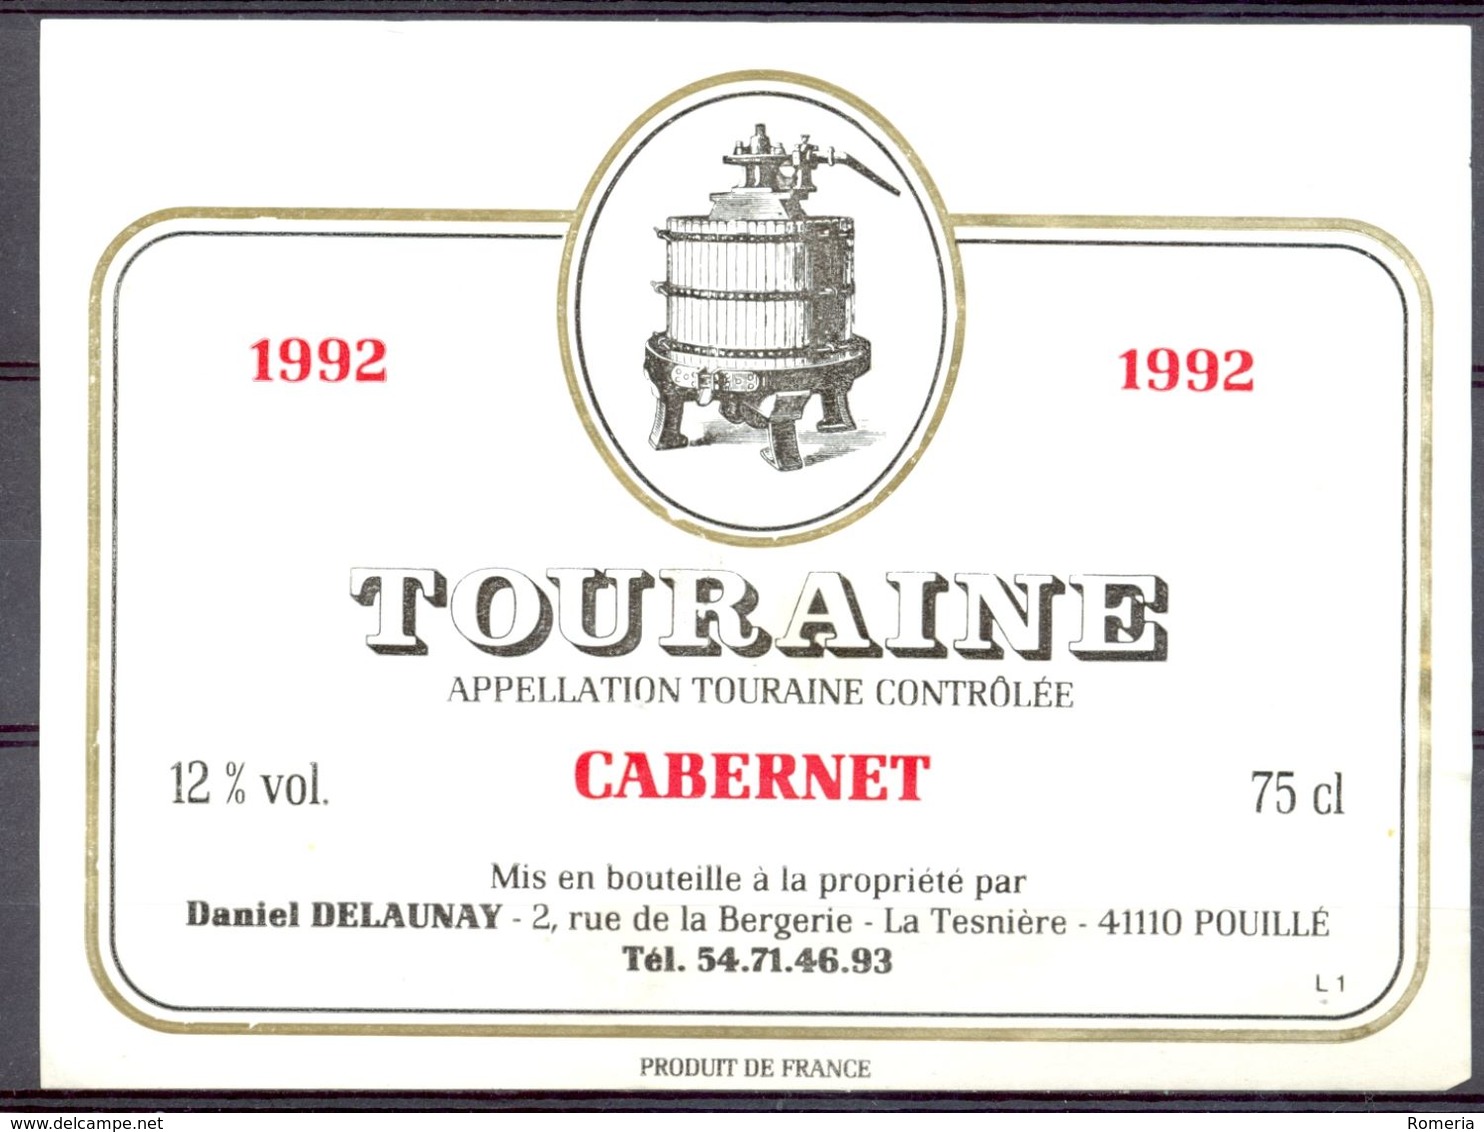 722 - Touraine 1992 Cabernet - Daniel Delaunay La Tesnière - 41110 Pouillé - Vino Tinto